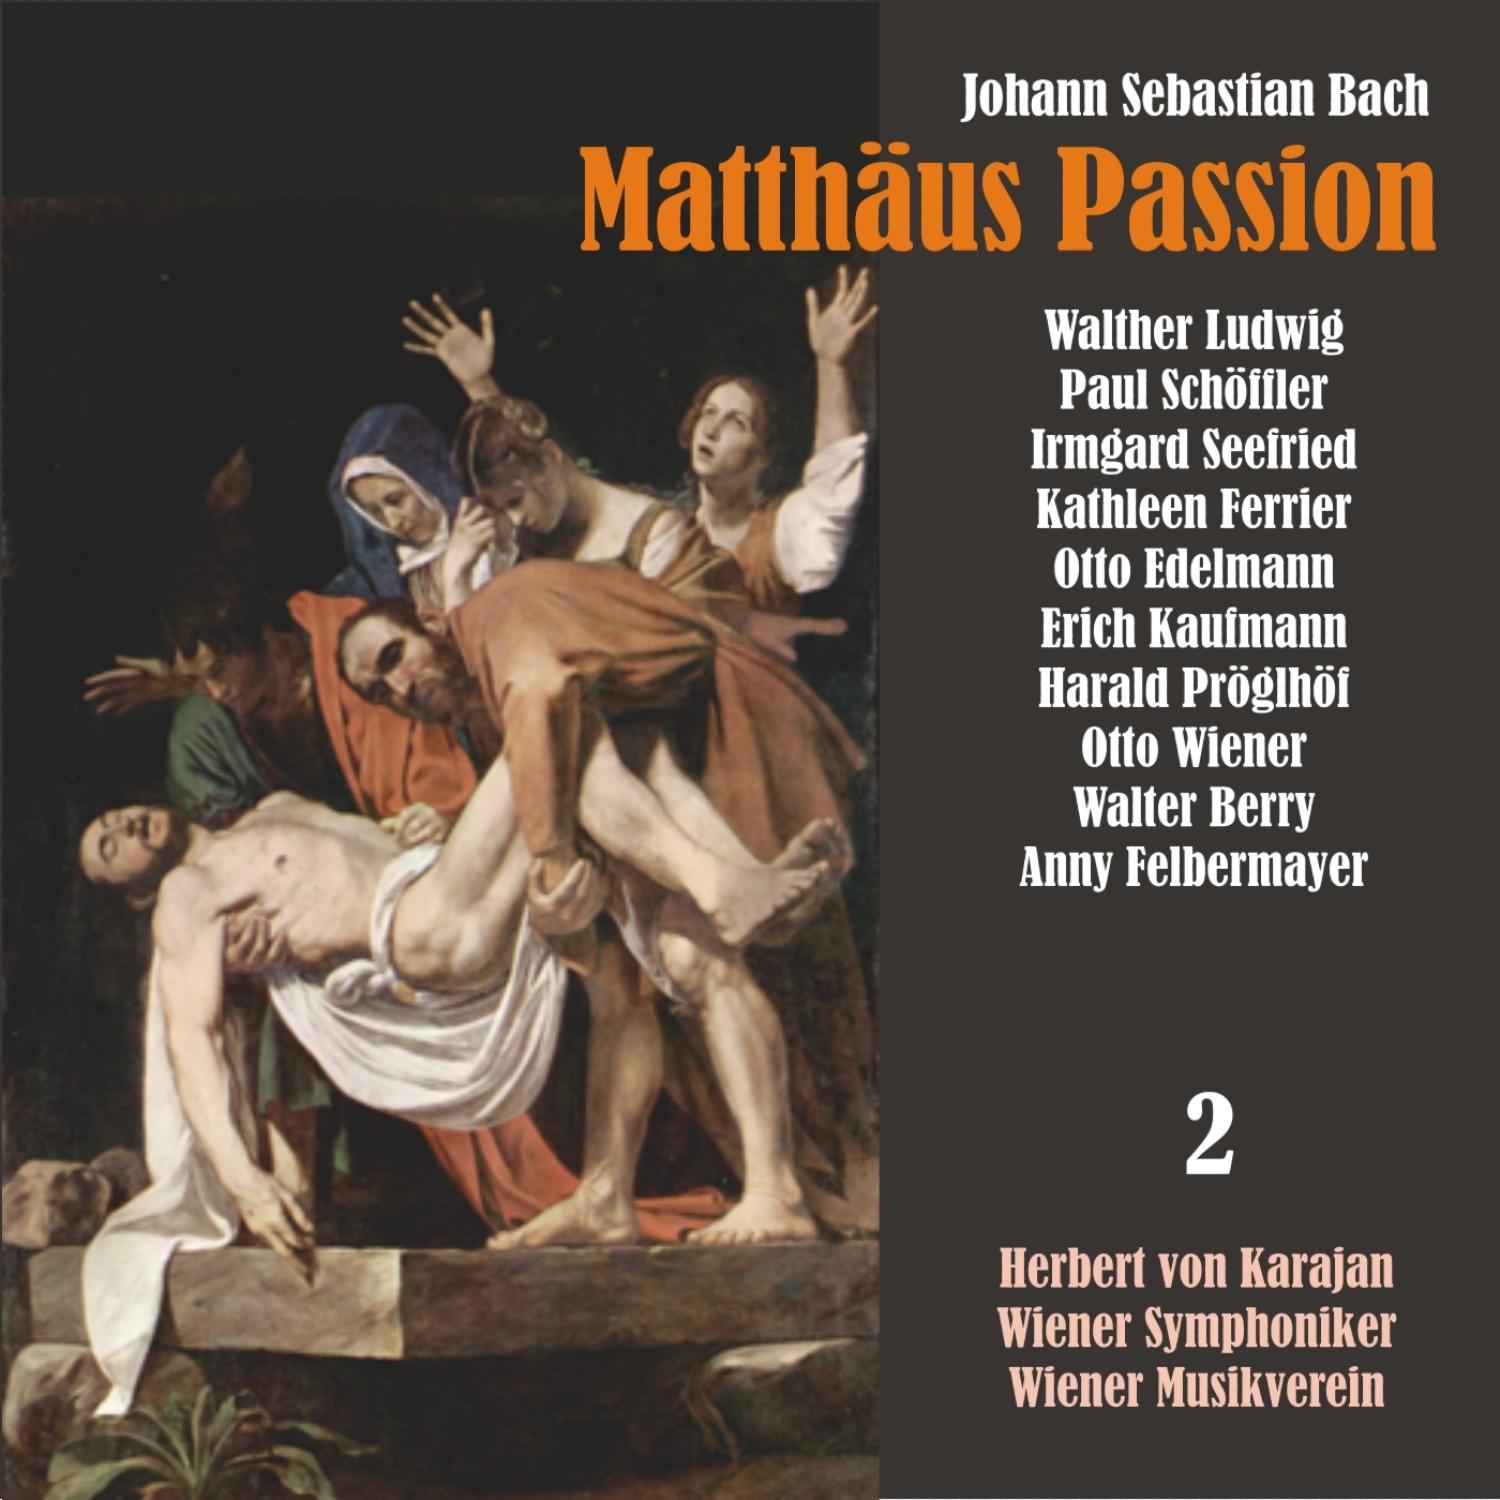 Matth us Passion, BWV 244: " Gebt mir meinen Jesum wieder!"